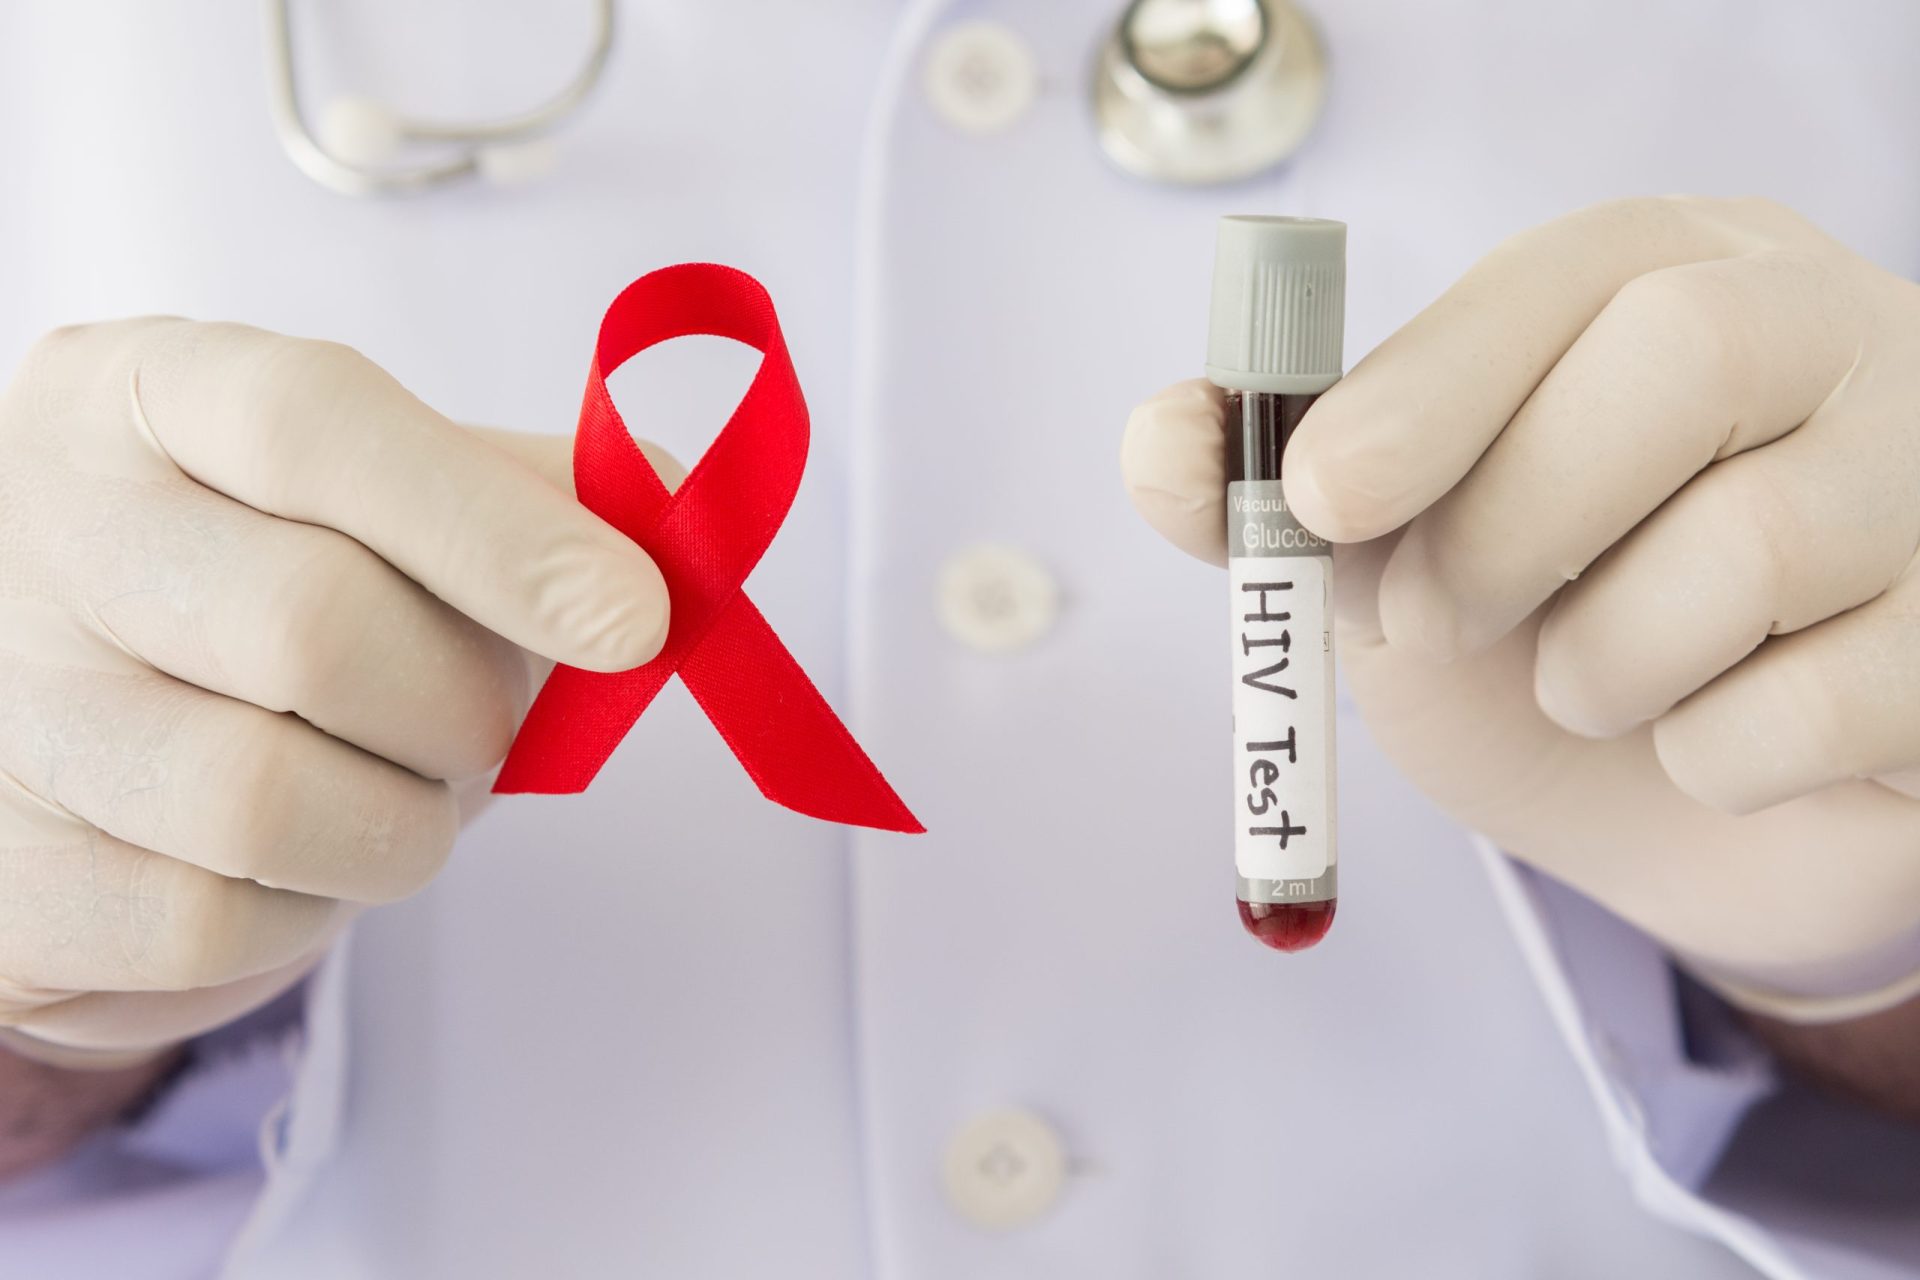 “Temos tudo para eliminar a ameaça do VIH/sida”